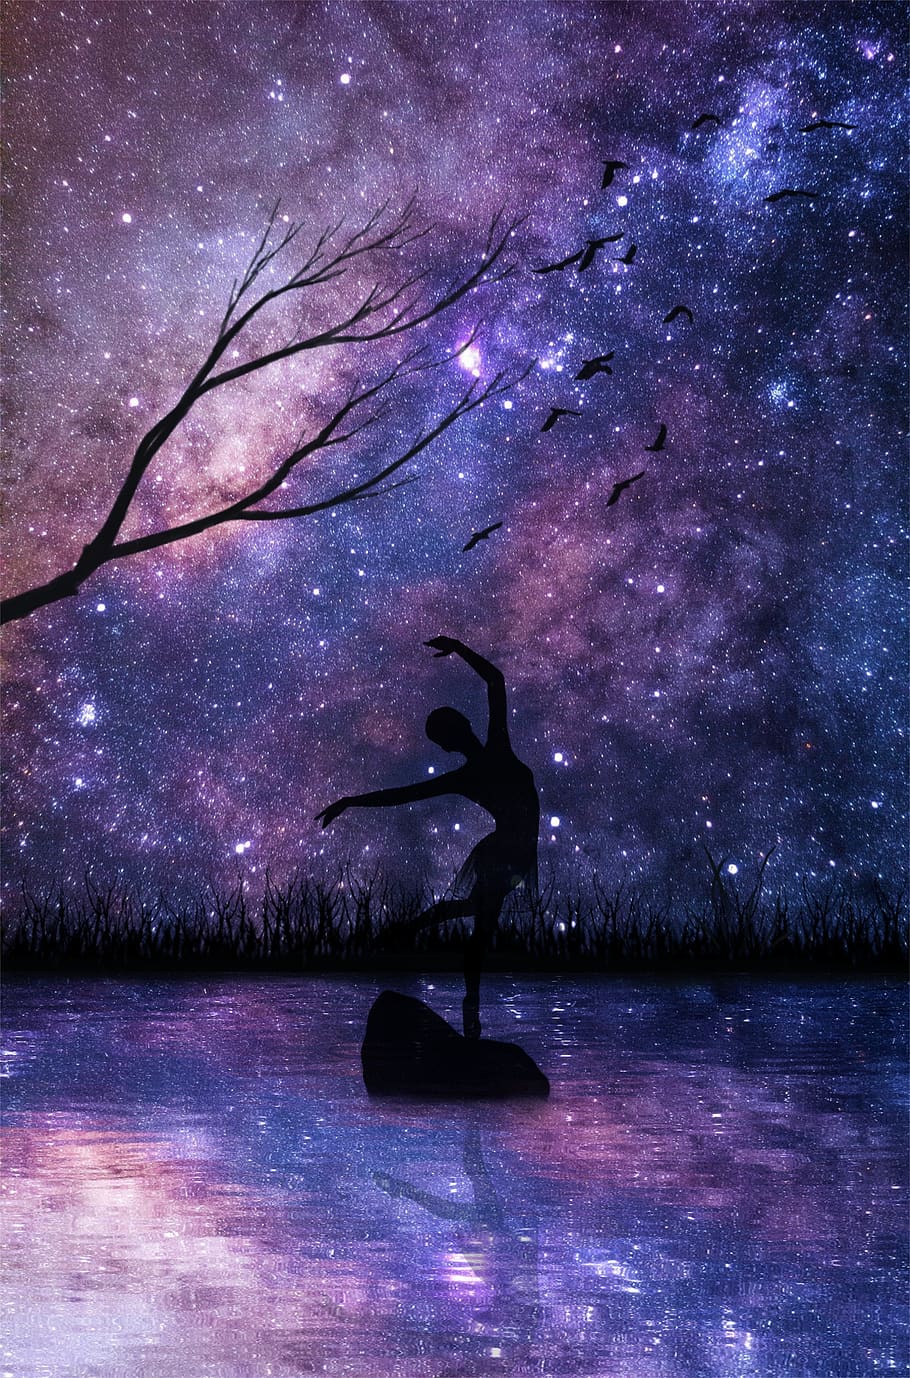 penari, refleksi, air, wanita, gadis, pohon, burung, nebula, malam, batu